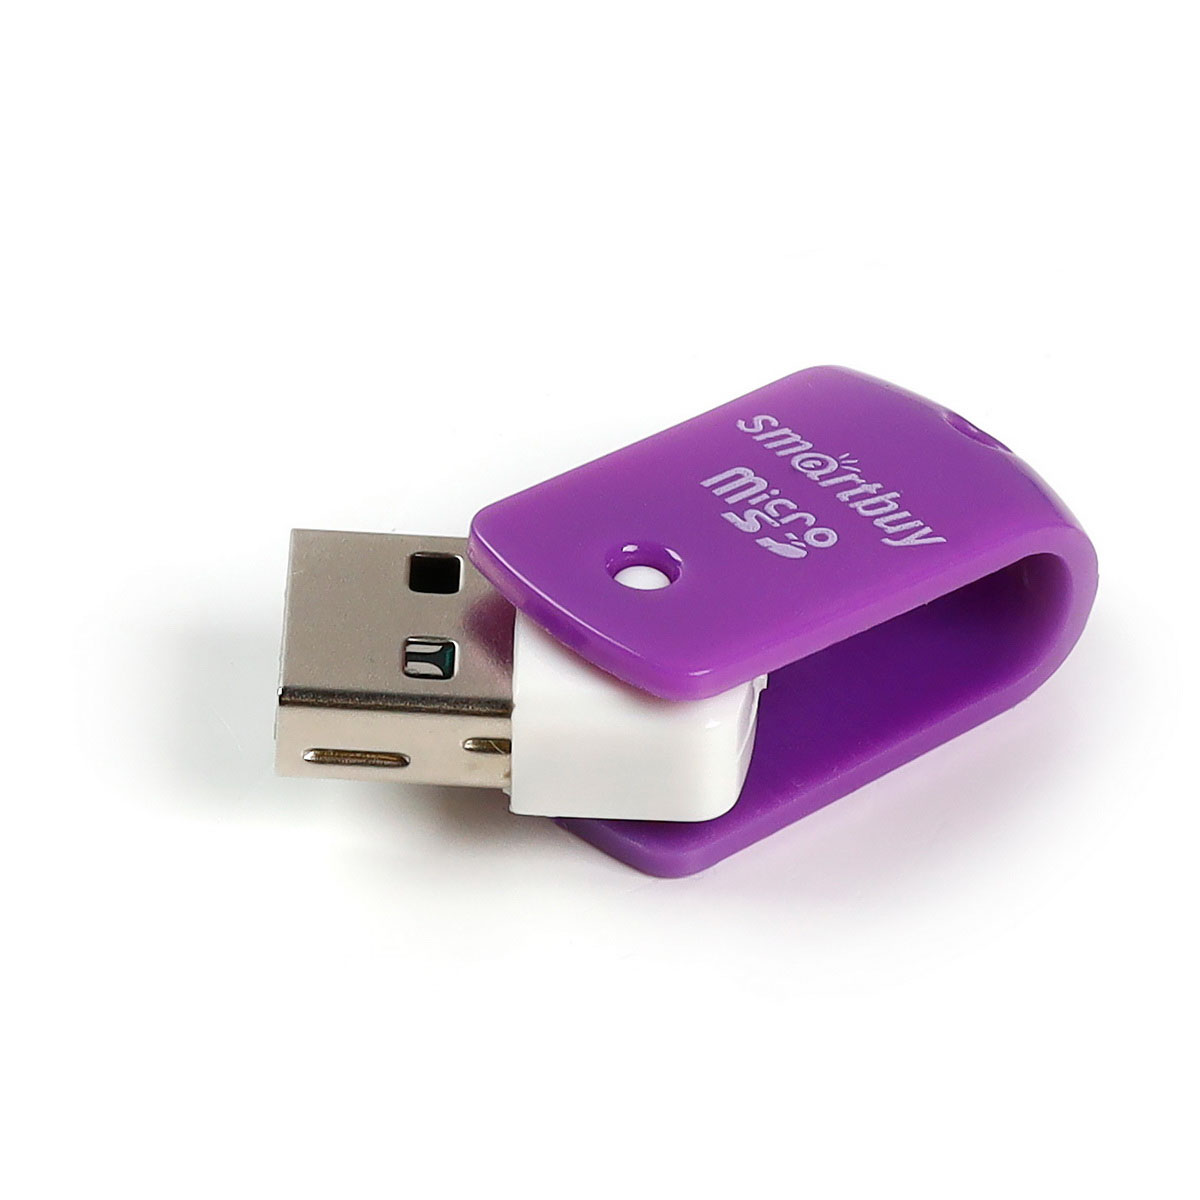 Картридер SMARTBUY SBR-706 MicroSD, цвет фиолетовый